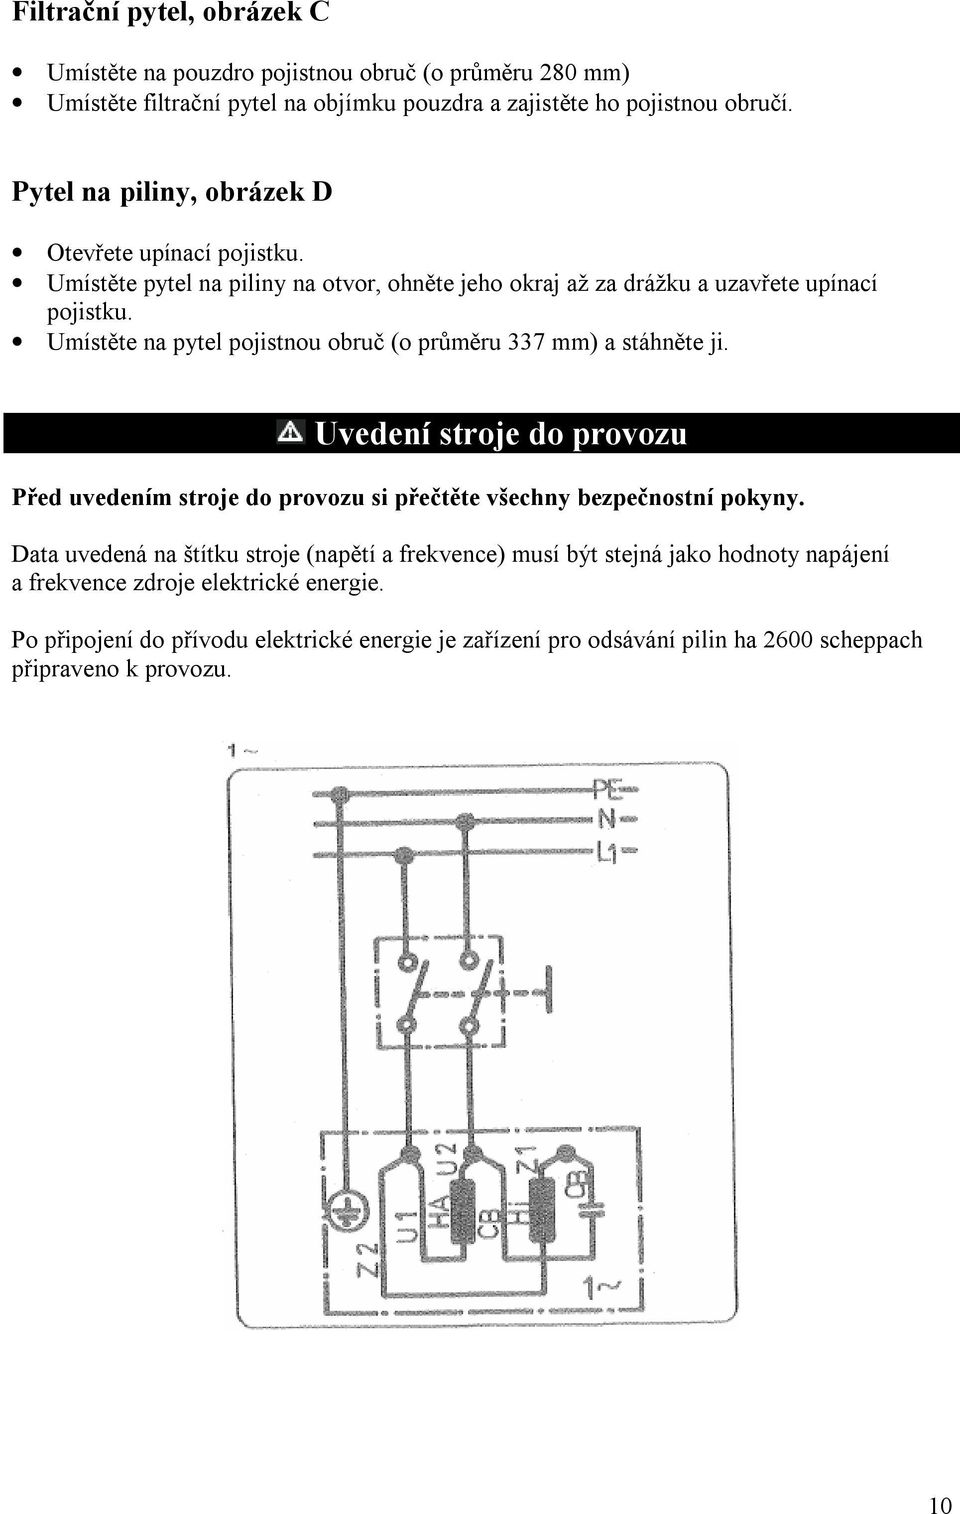 Zařízení pro odsávání pilin. Návod k obsluze - PDF Stažení zdarma